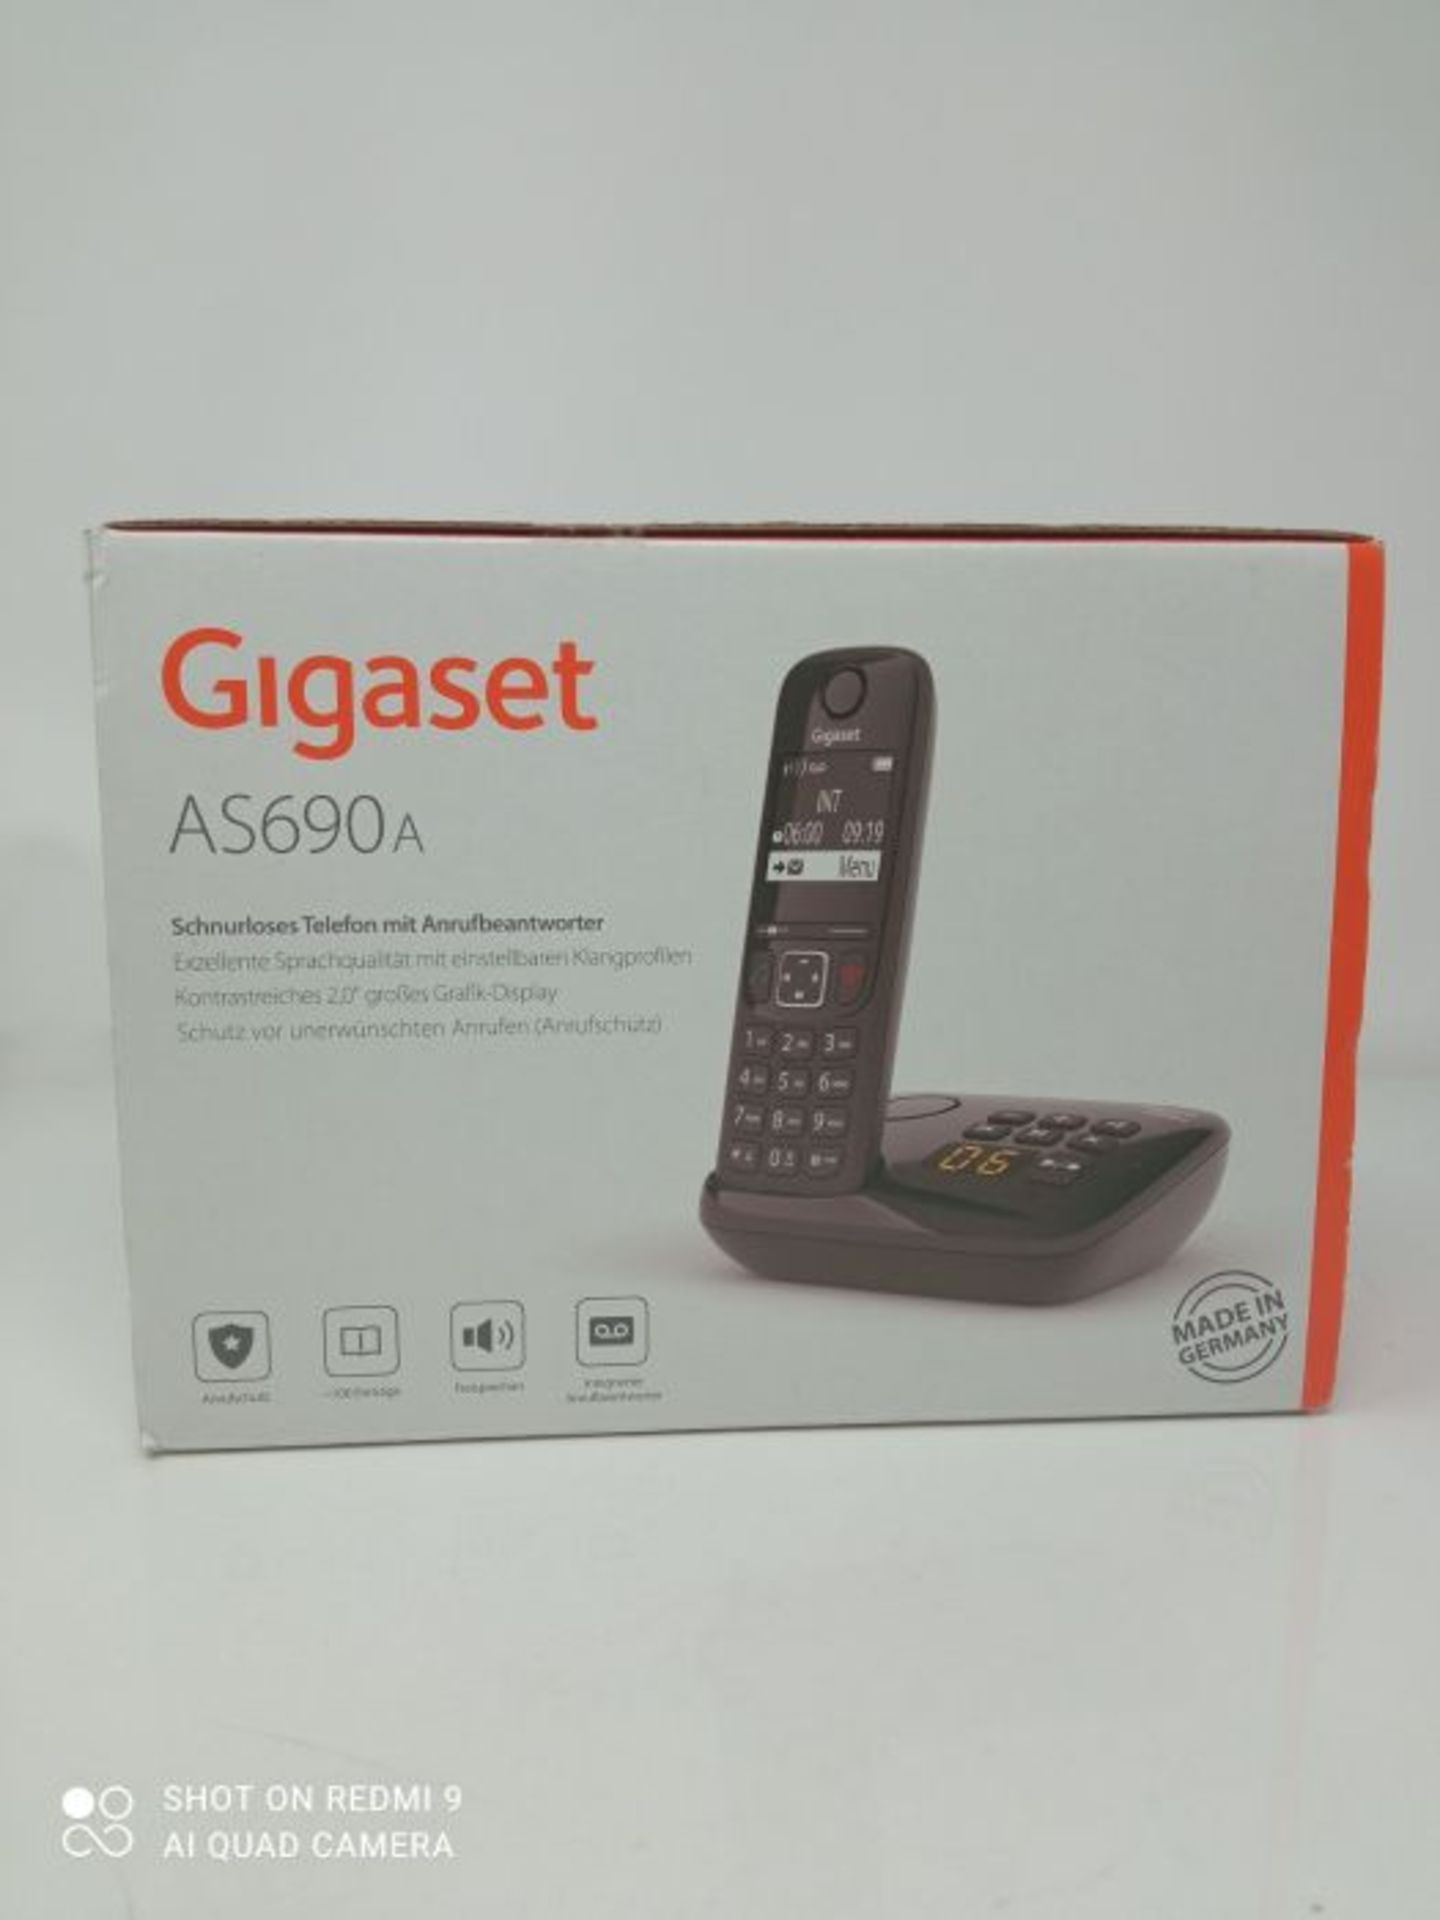 Gigaset AS690A - Schnurloses Telefon mit Anrufbeantworter - groÃxes, kontrastreiches - Image 2 of 3